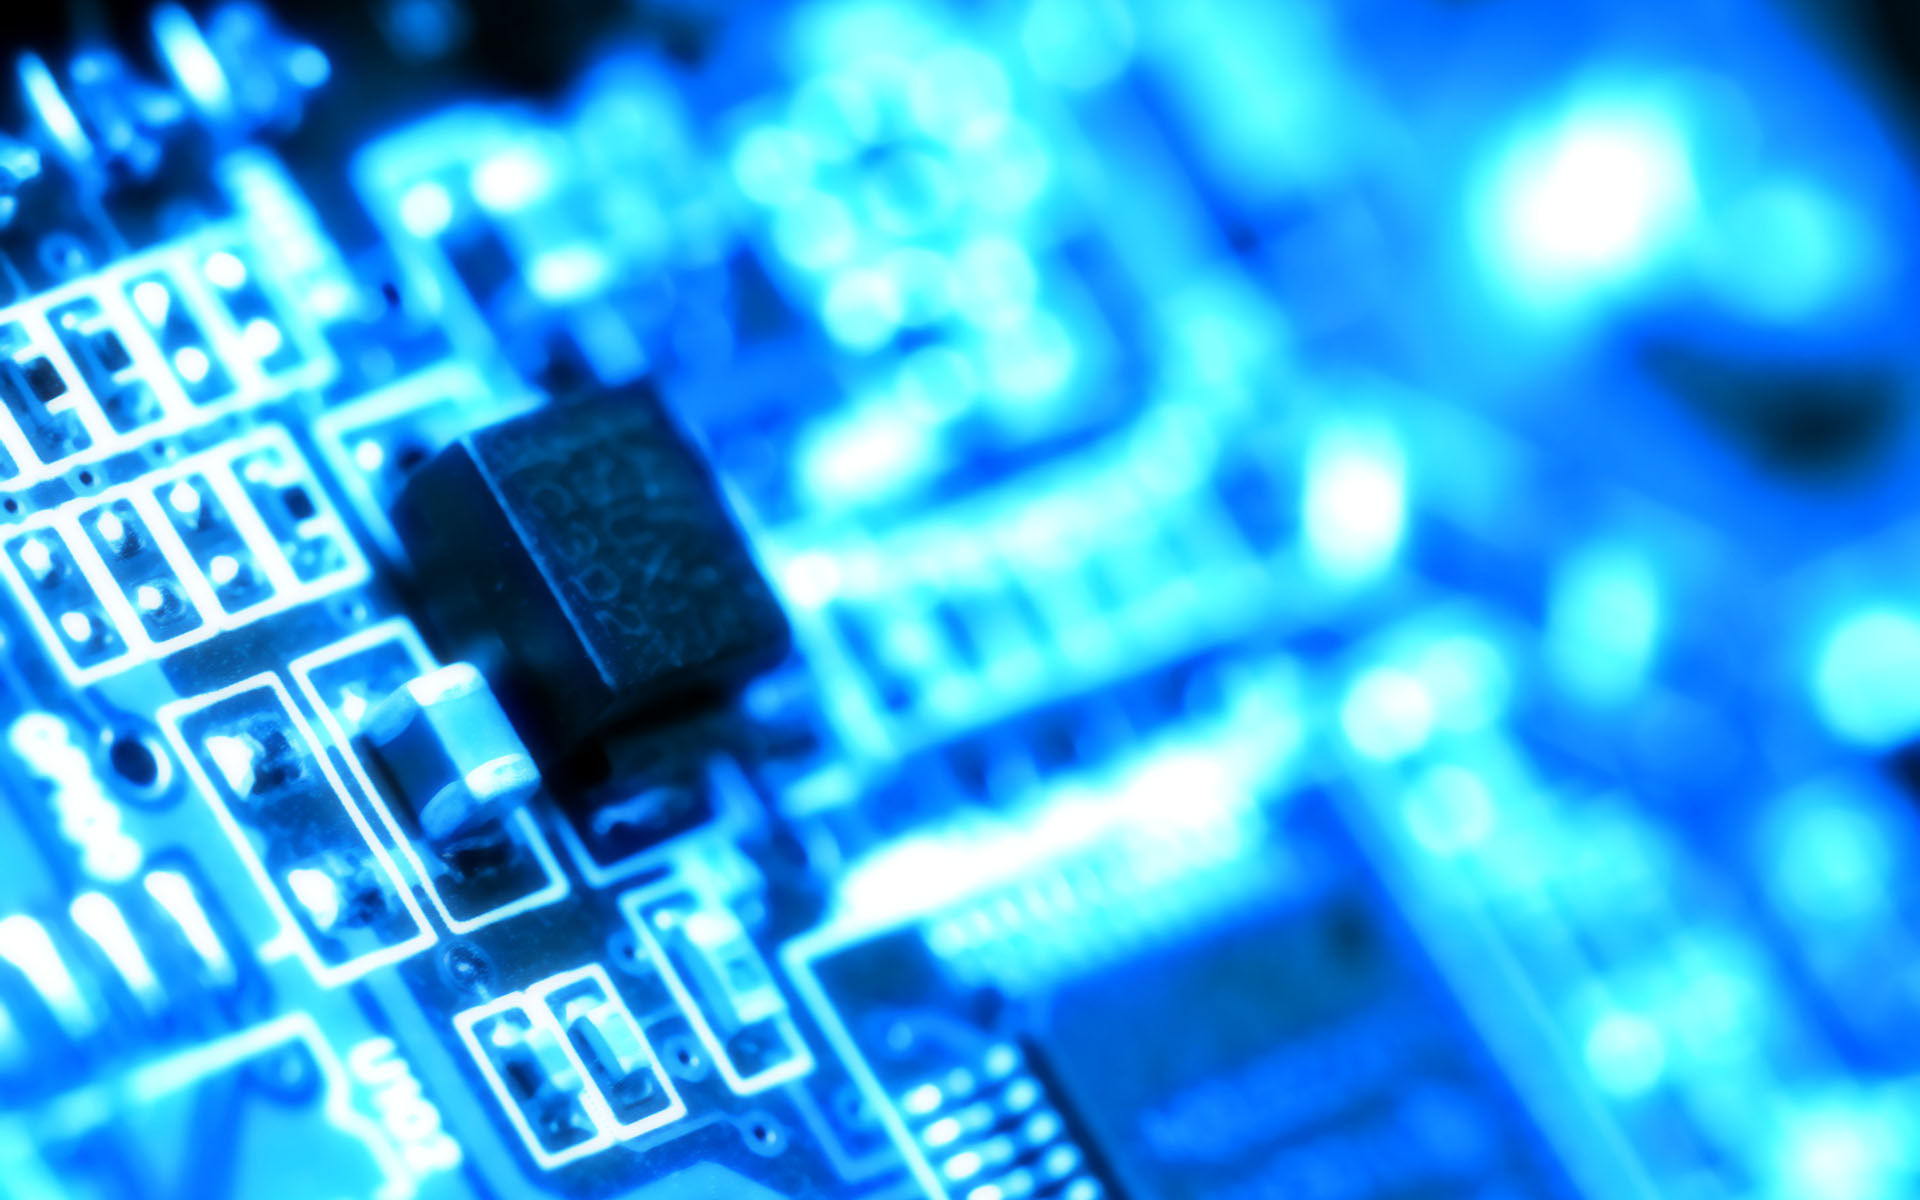 hardware hintergrundbild,elektronisches ingenieurwesen,blau,elektronik,technologie,elektronisches bauteil